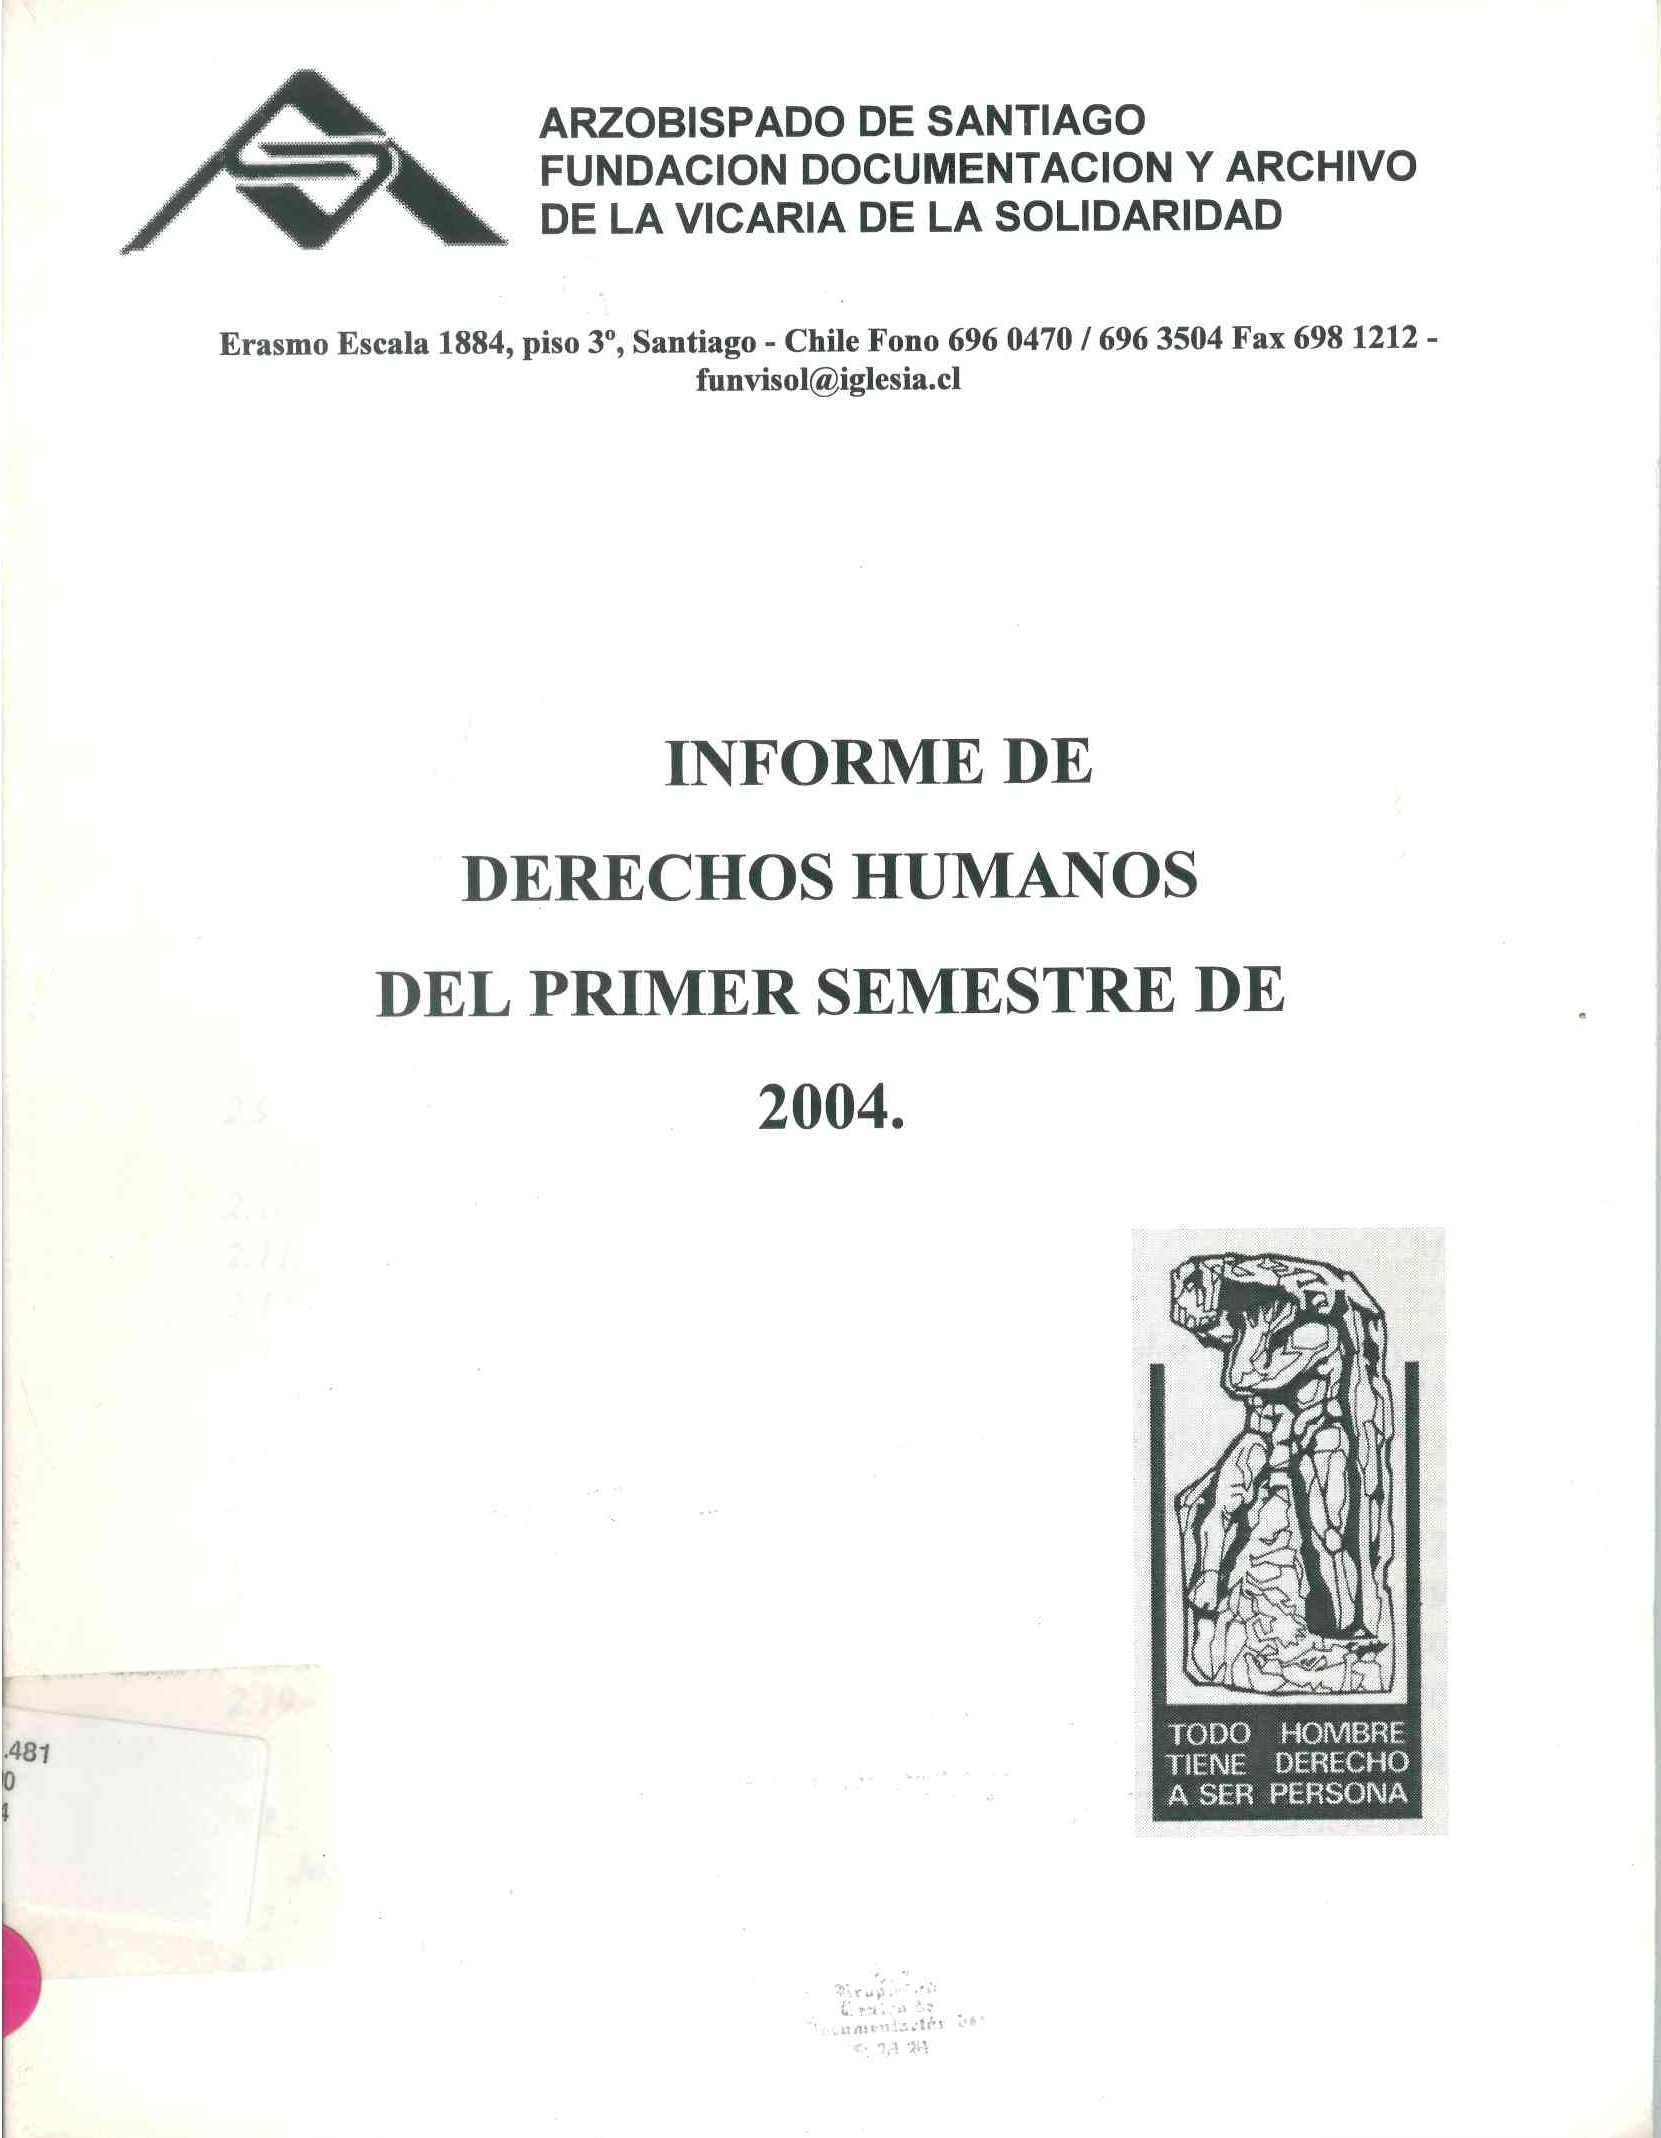 Informe de derechos humanos del primer semestre 2004